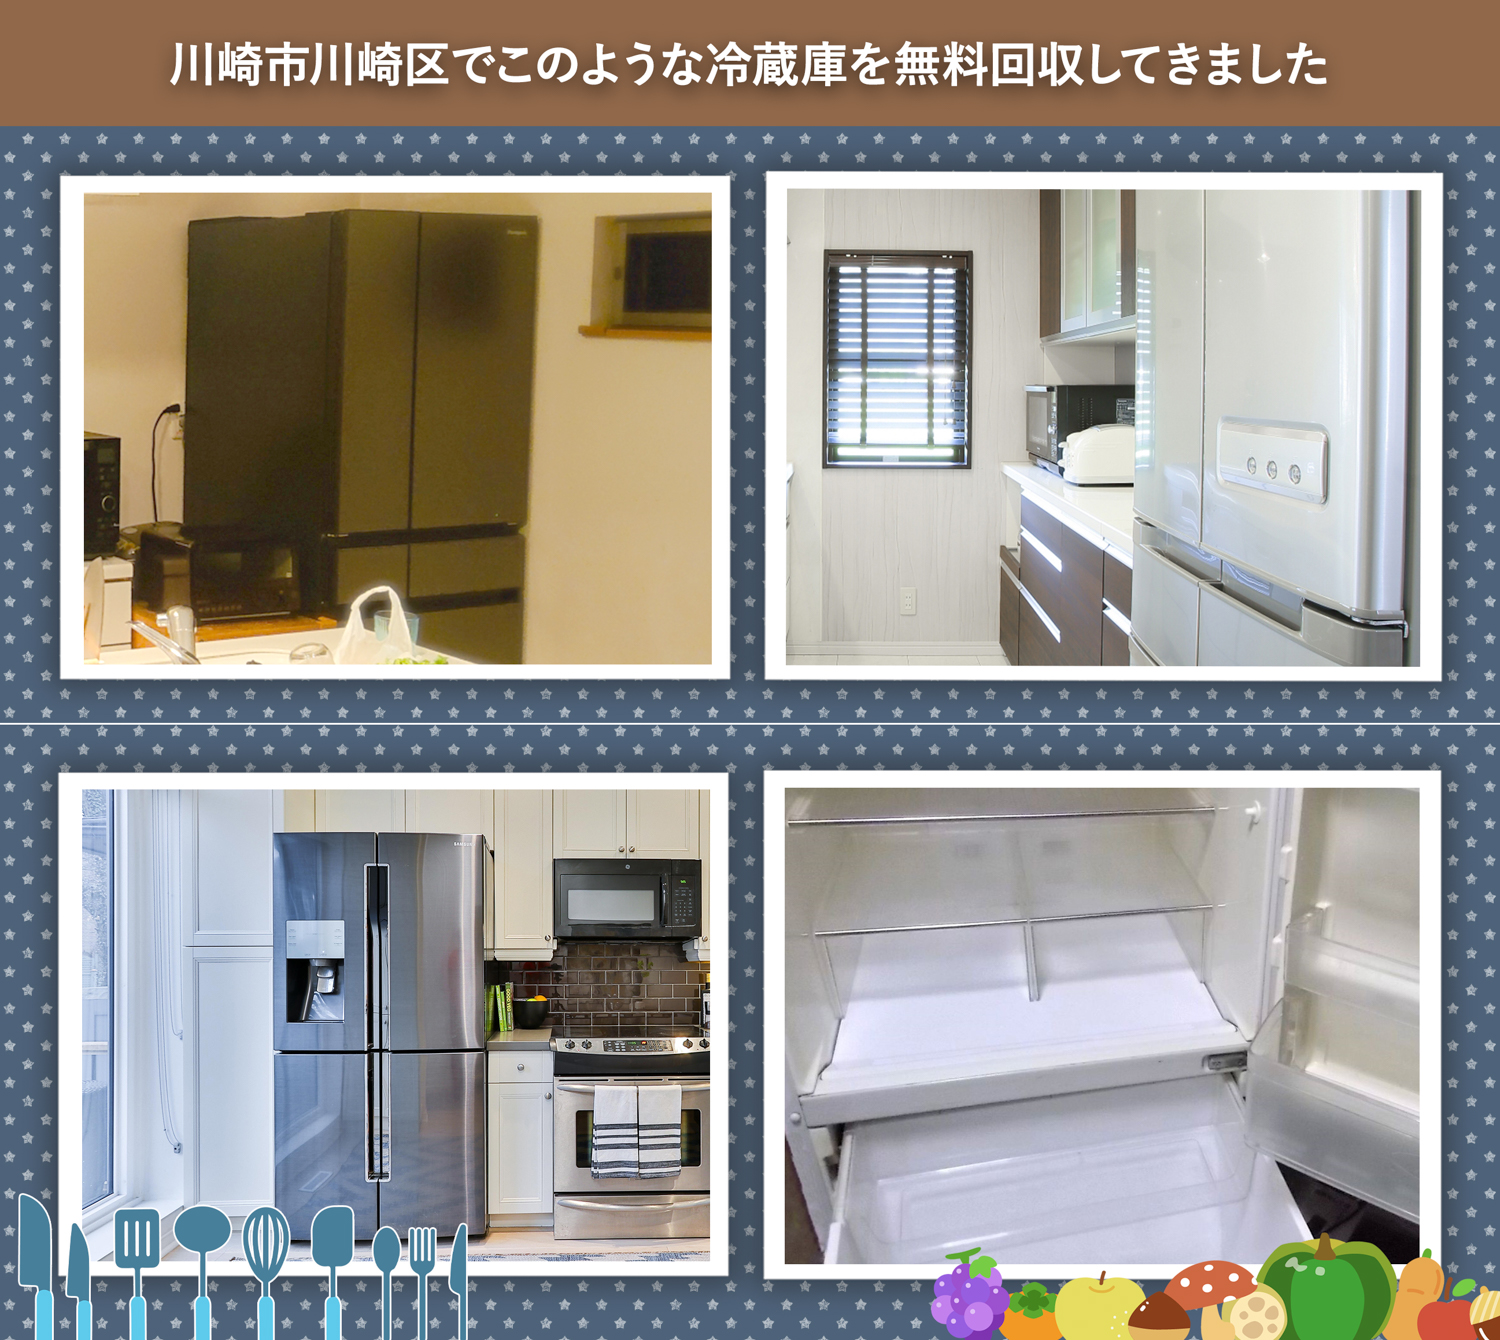 川崎市川崎区でこのような冷蔵庫を無料回収してきました。